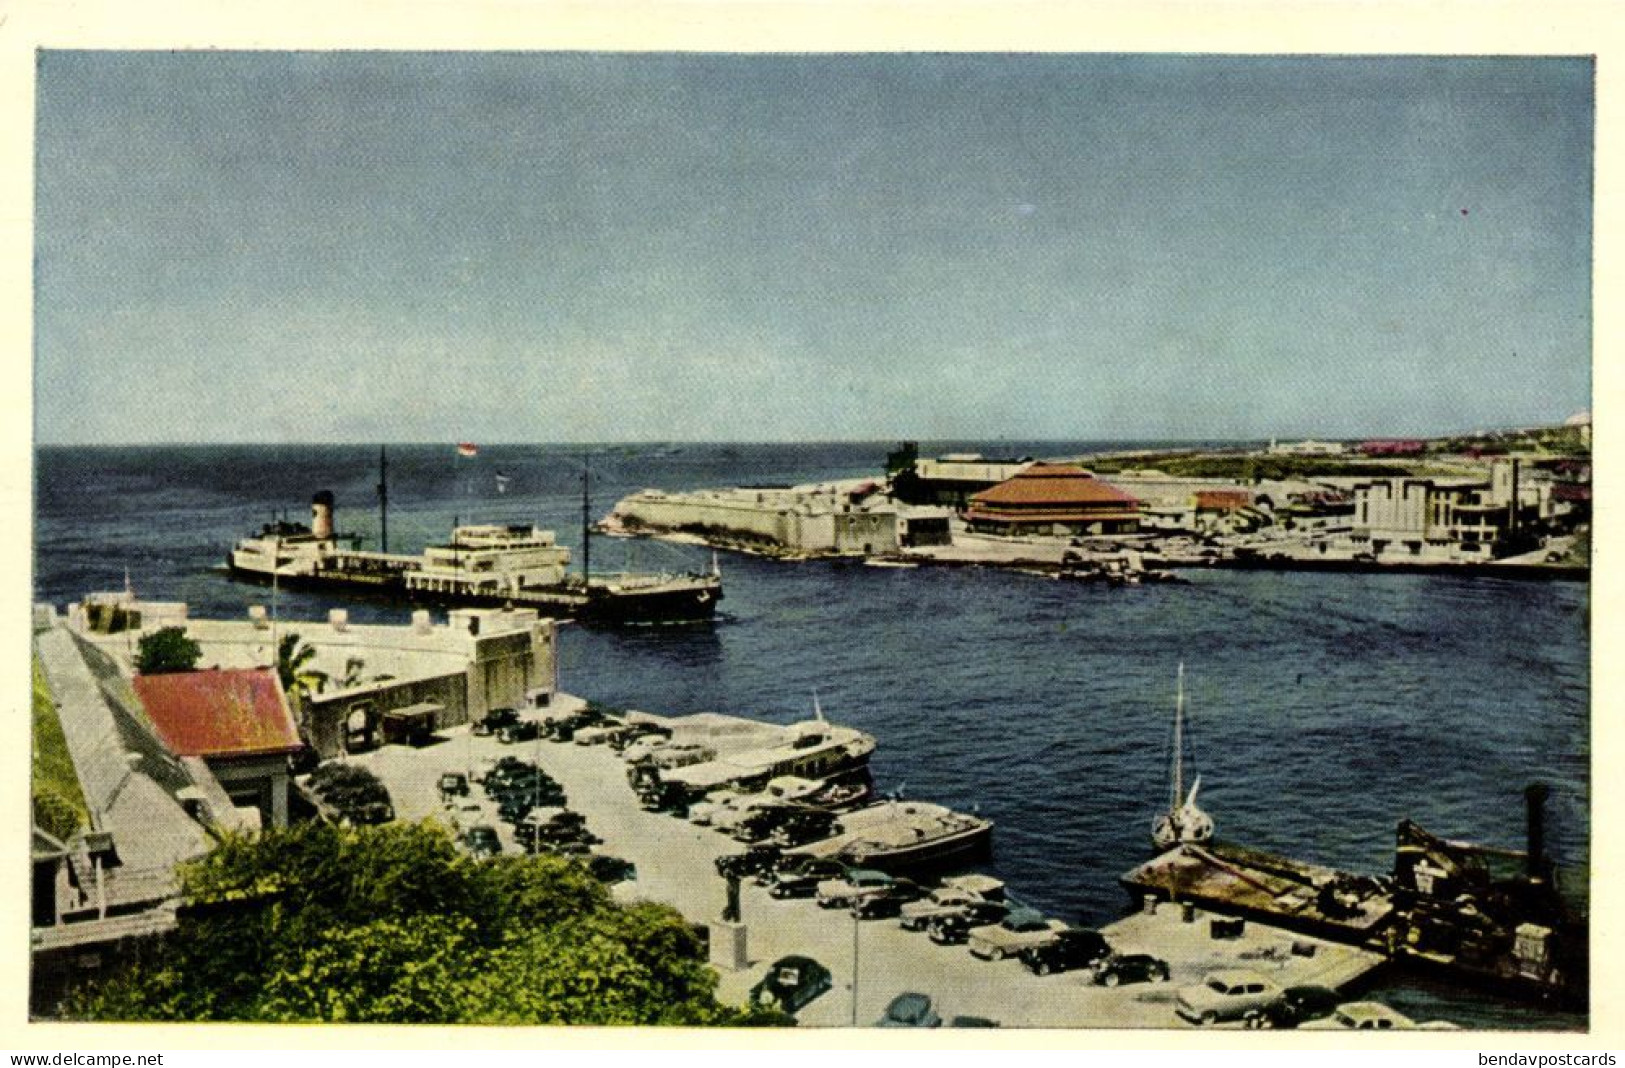 Curacao, N.A., WILLEMSTAD, Harbour Entrance "Anna Bay" (1950s) Curiosa Postcard - Curaçao